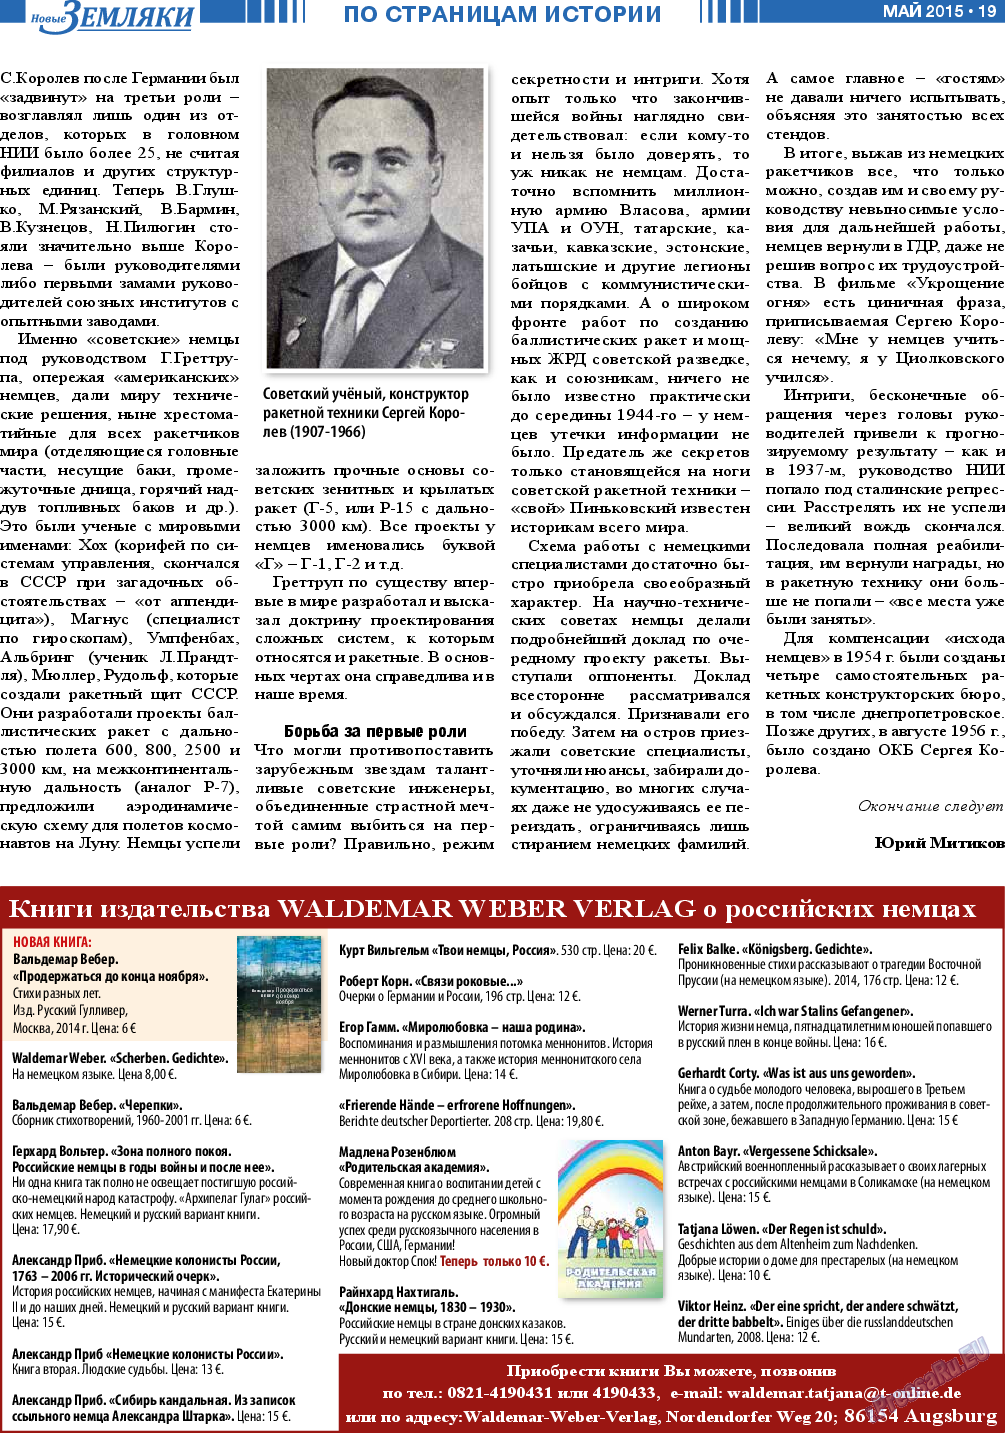 Новые Земляки, газета. 2015 №5 стр.19